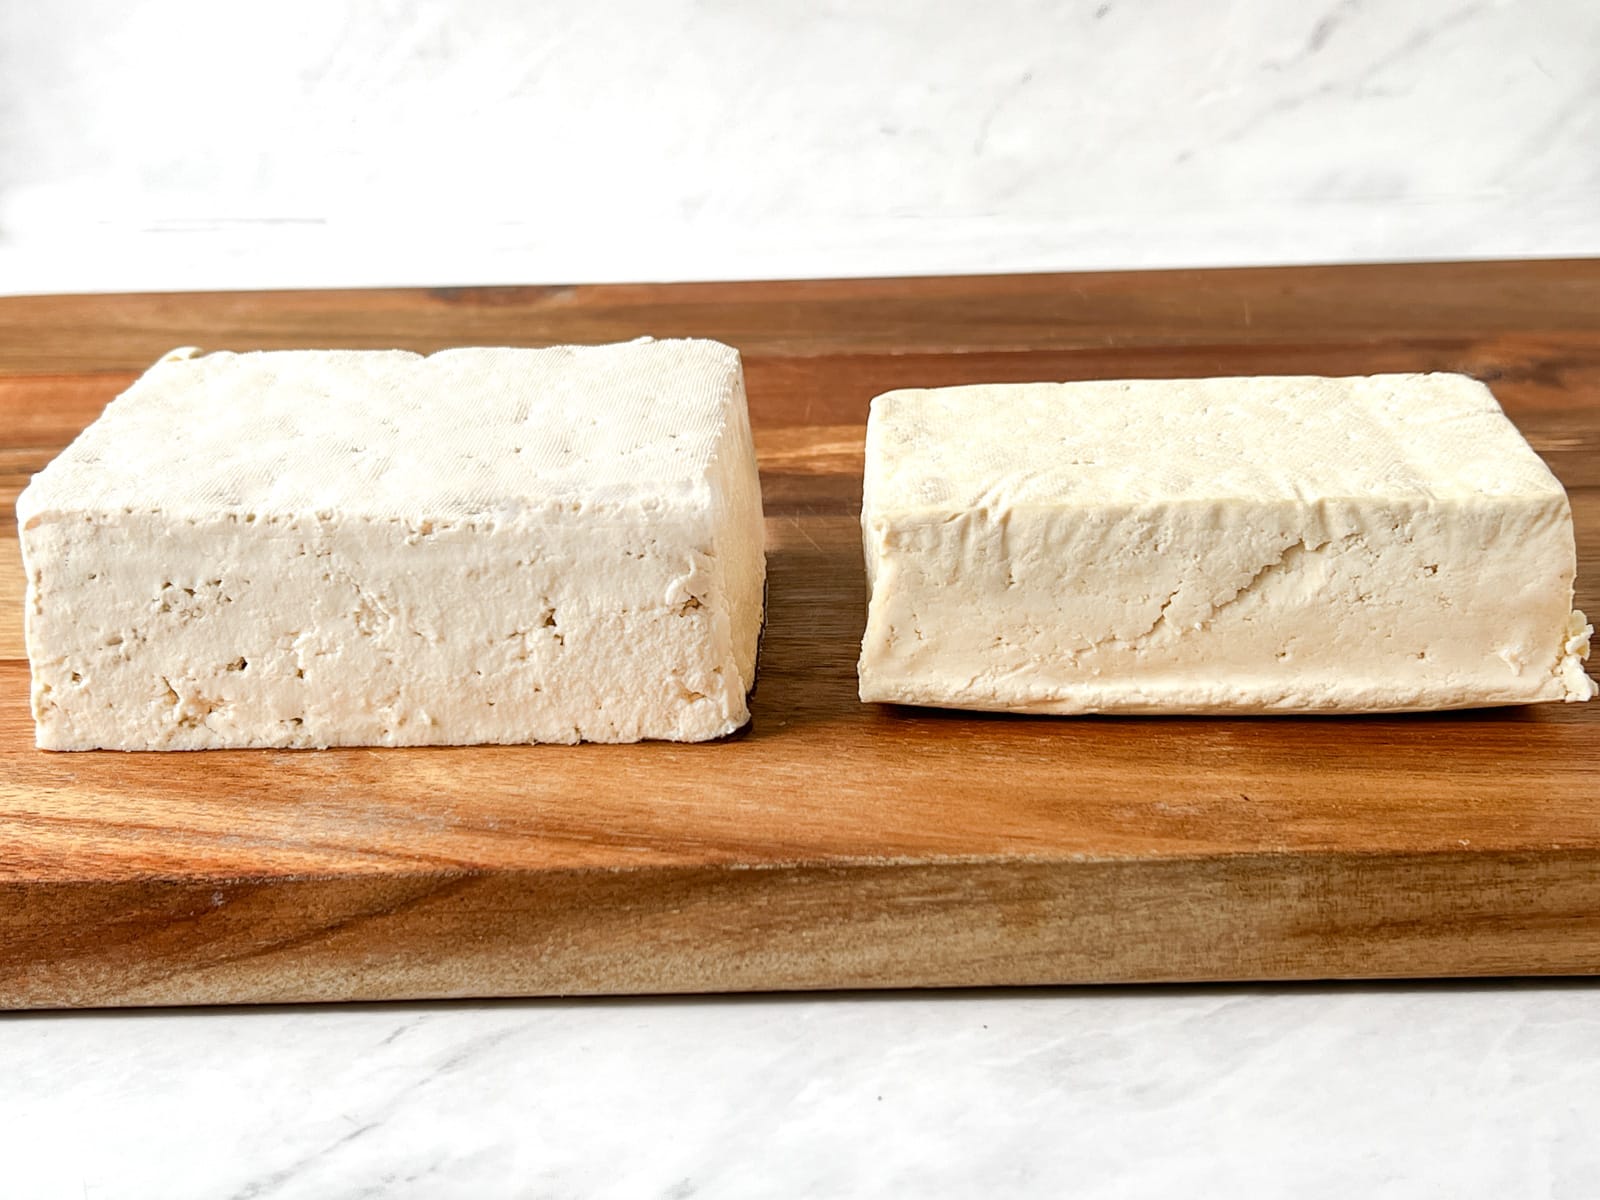 Two blocks of raw tofu on a cutting board.